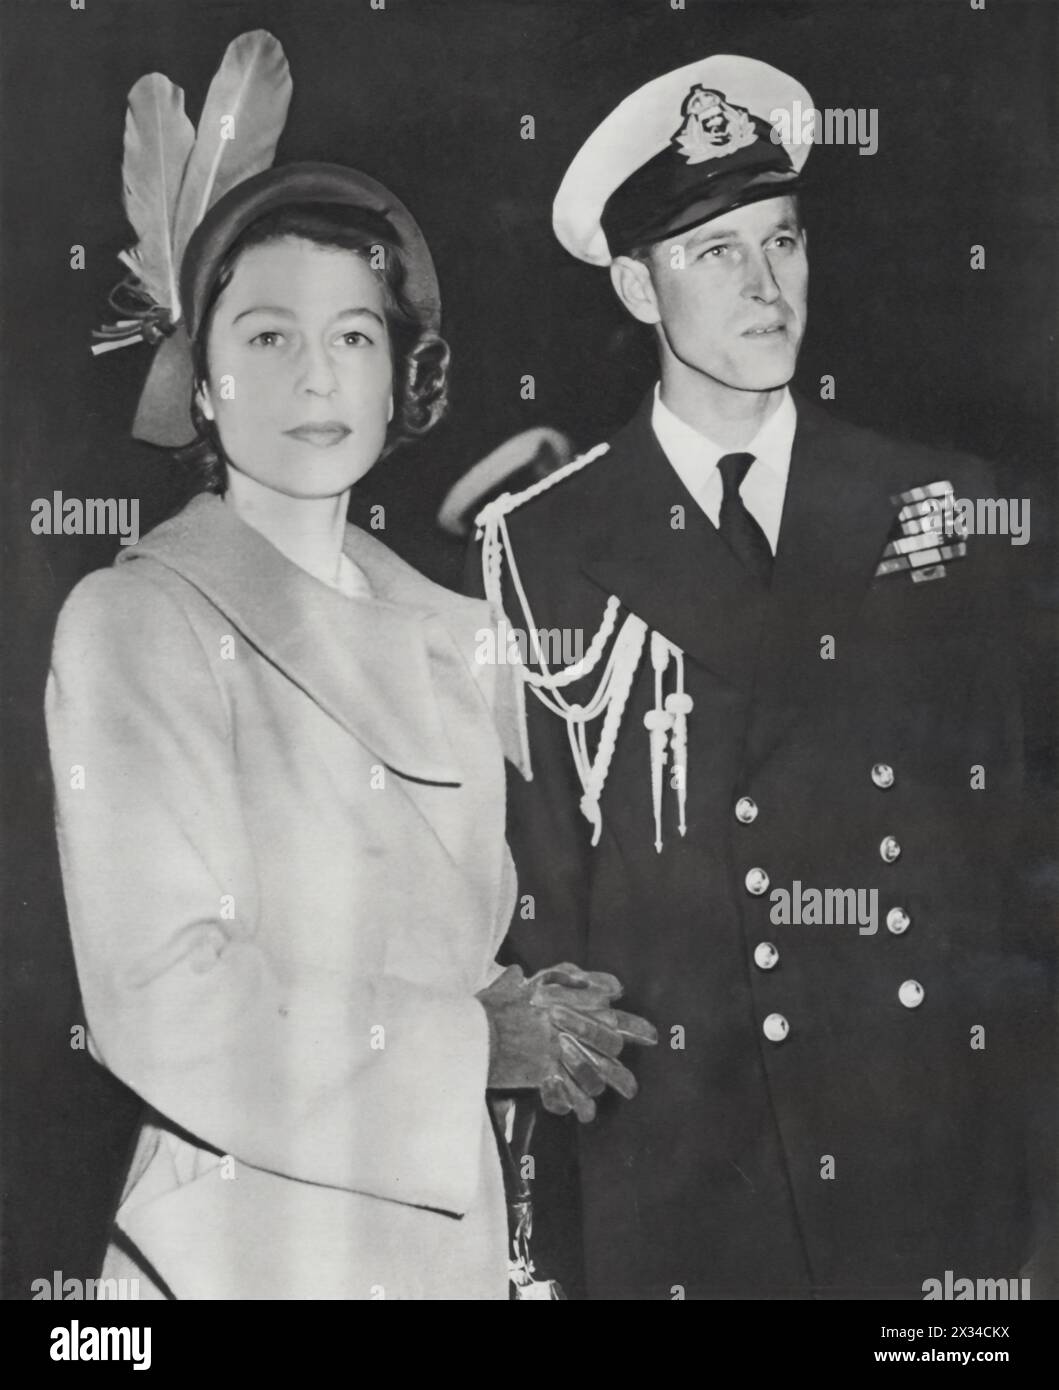 Prinzessin Elizabeth und ihr Ehemann Philip, der Herzog von Edinburgh, wurden auf Malta fotografiert, wo Elisabeth sich Philip anschloss, um königliche Pflichten zu erfüllen und einen kurzen Urlaub zu verbringen, datiert von 1949. Dieser Besuch ermöglichte es ihnen nicht nur, offizielle Aufgaben zu erfüllen, sondern bot auch eine persönliche Pause, die das Gleichgewicht zwischen ihrer öffentlichen Rolle und ihrem Privatleben widerspiegelte. Stockfoto